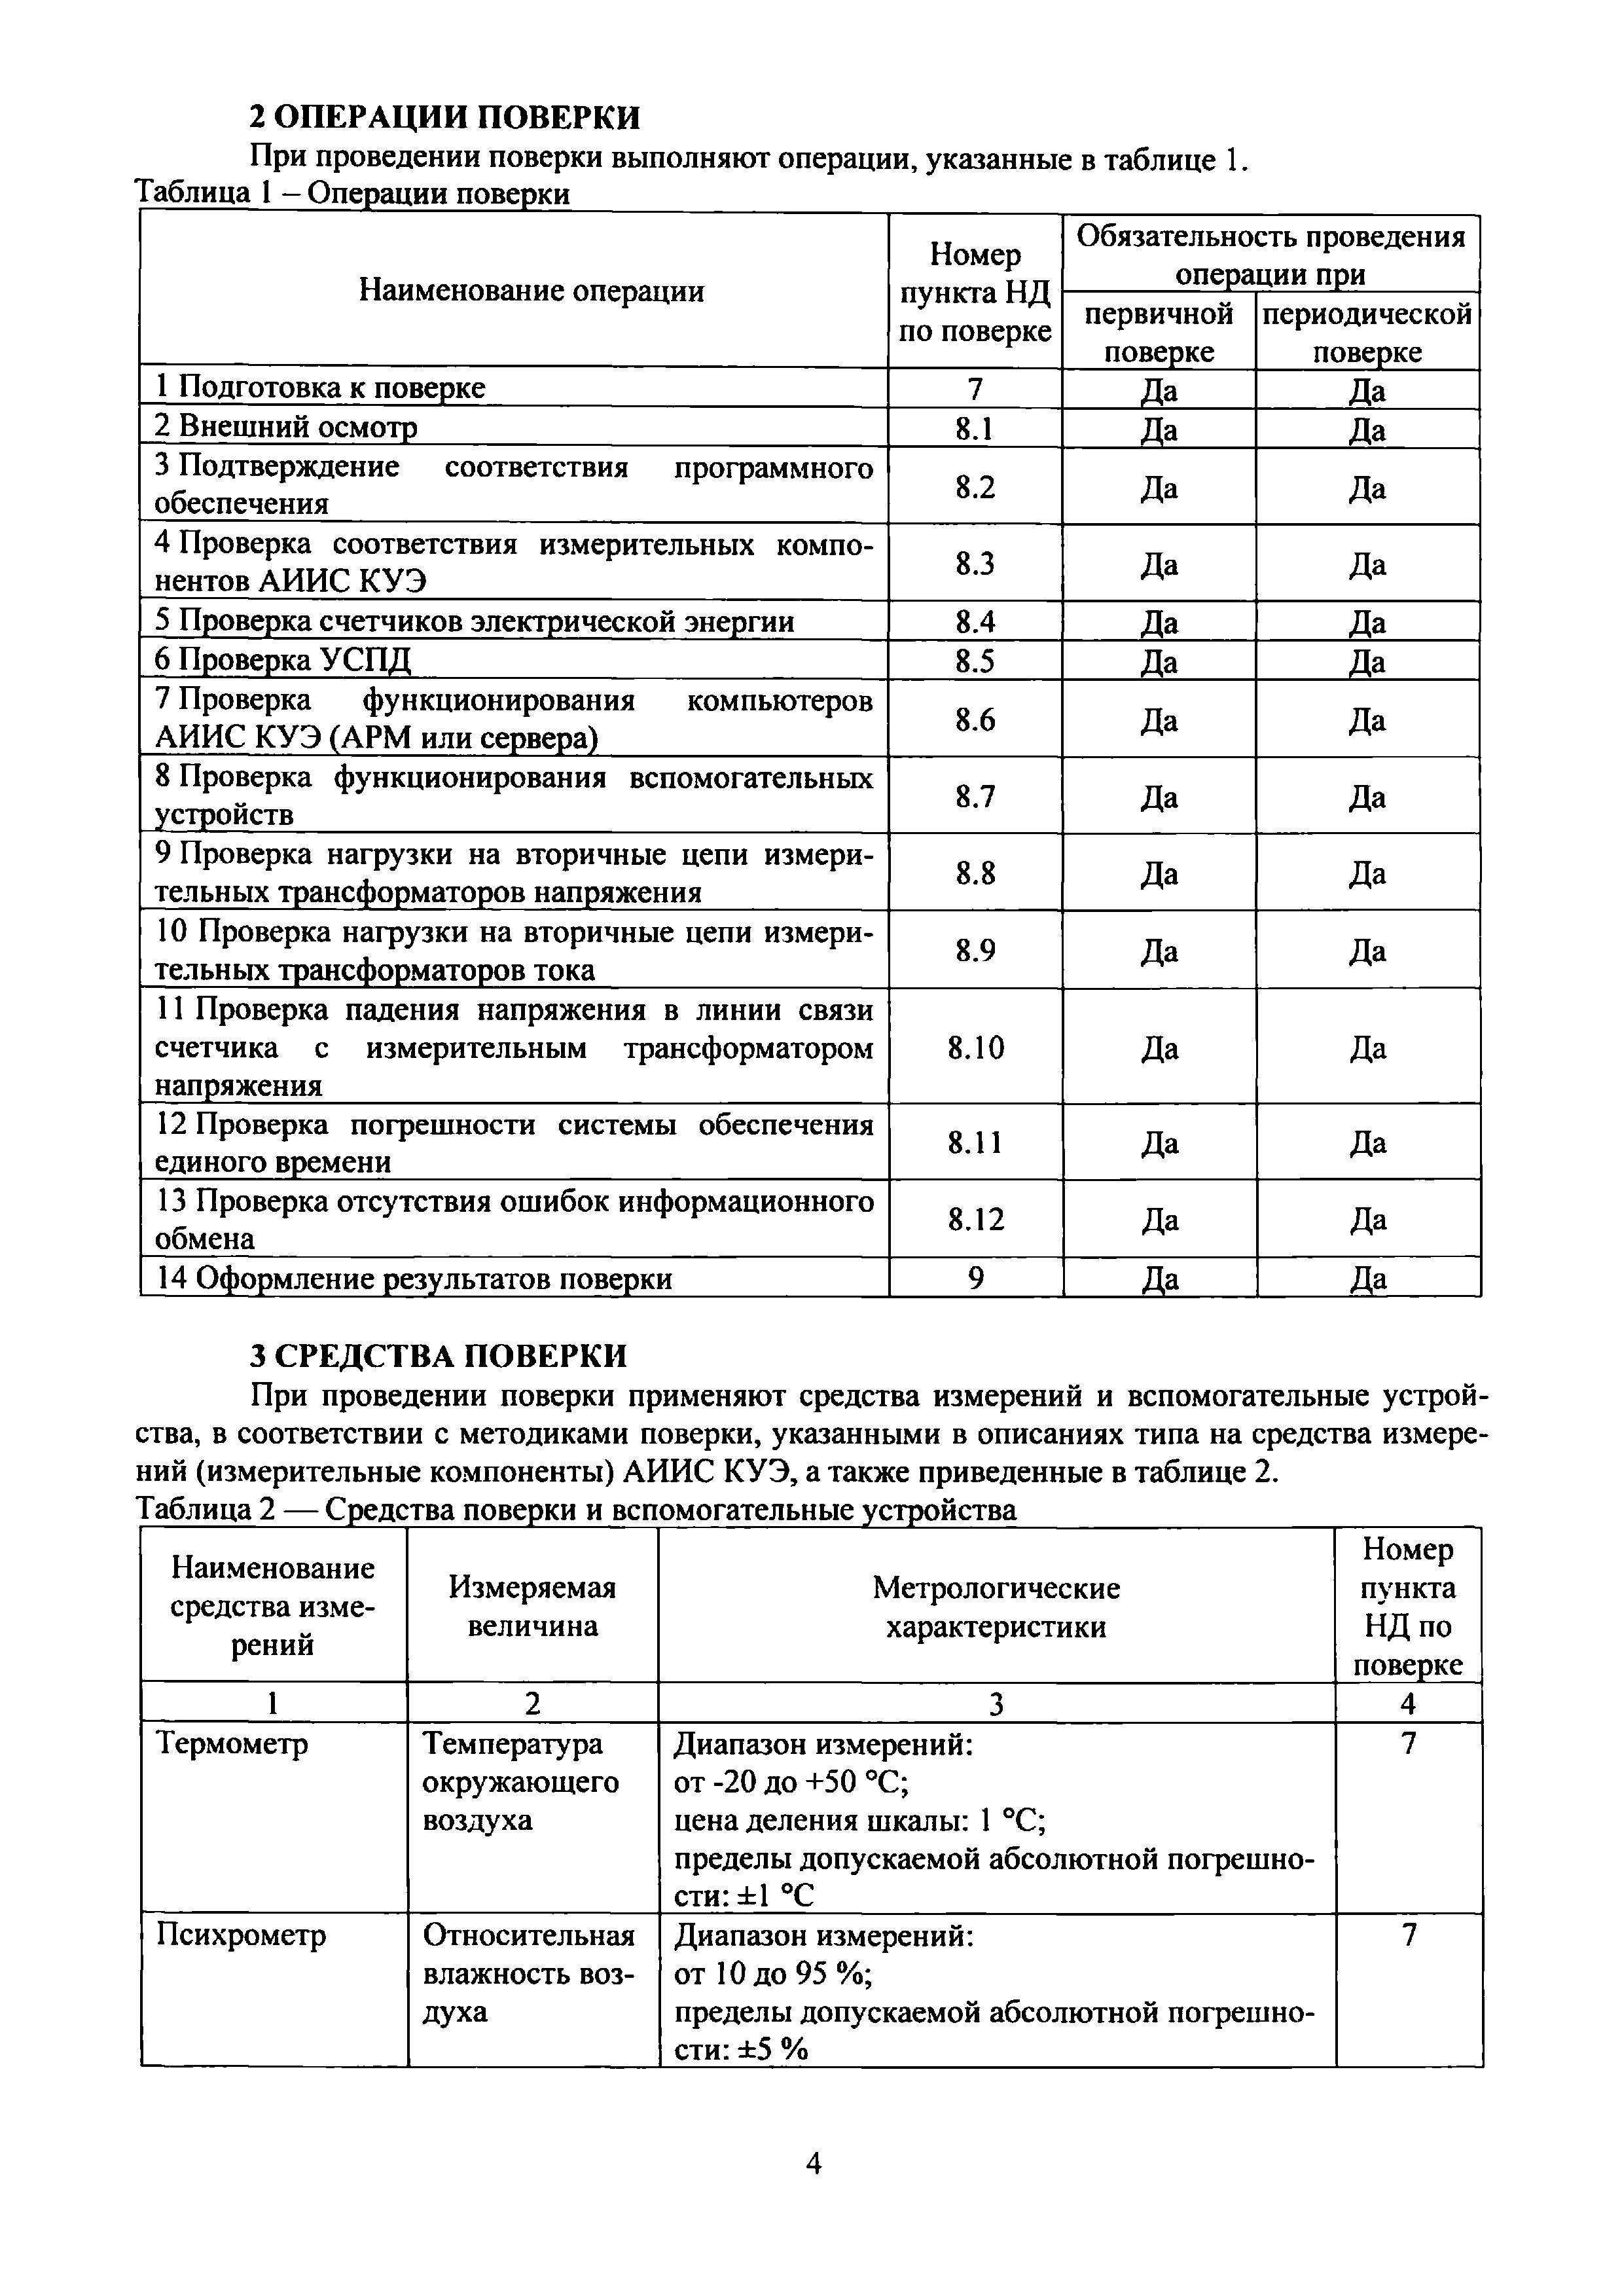 МП ЭПР-226-2020